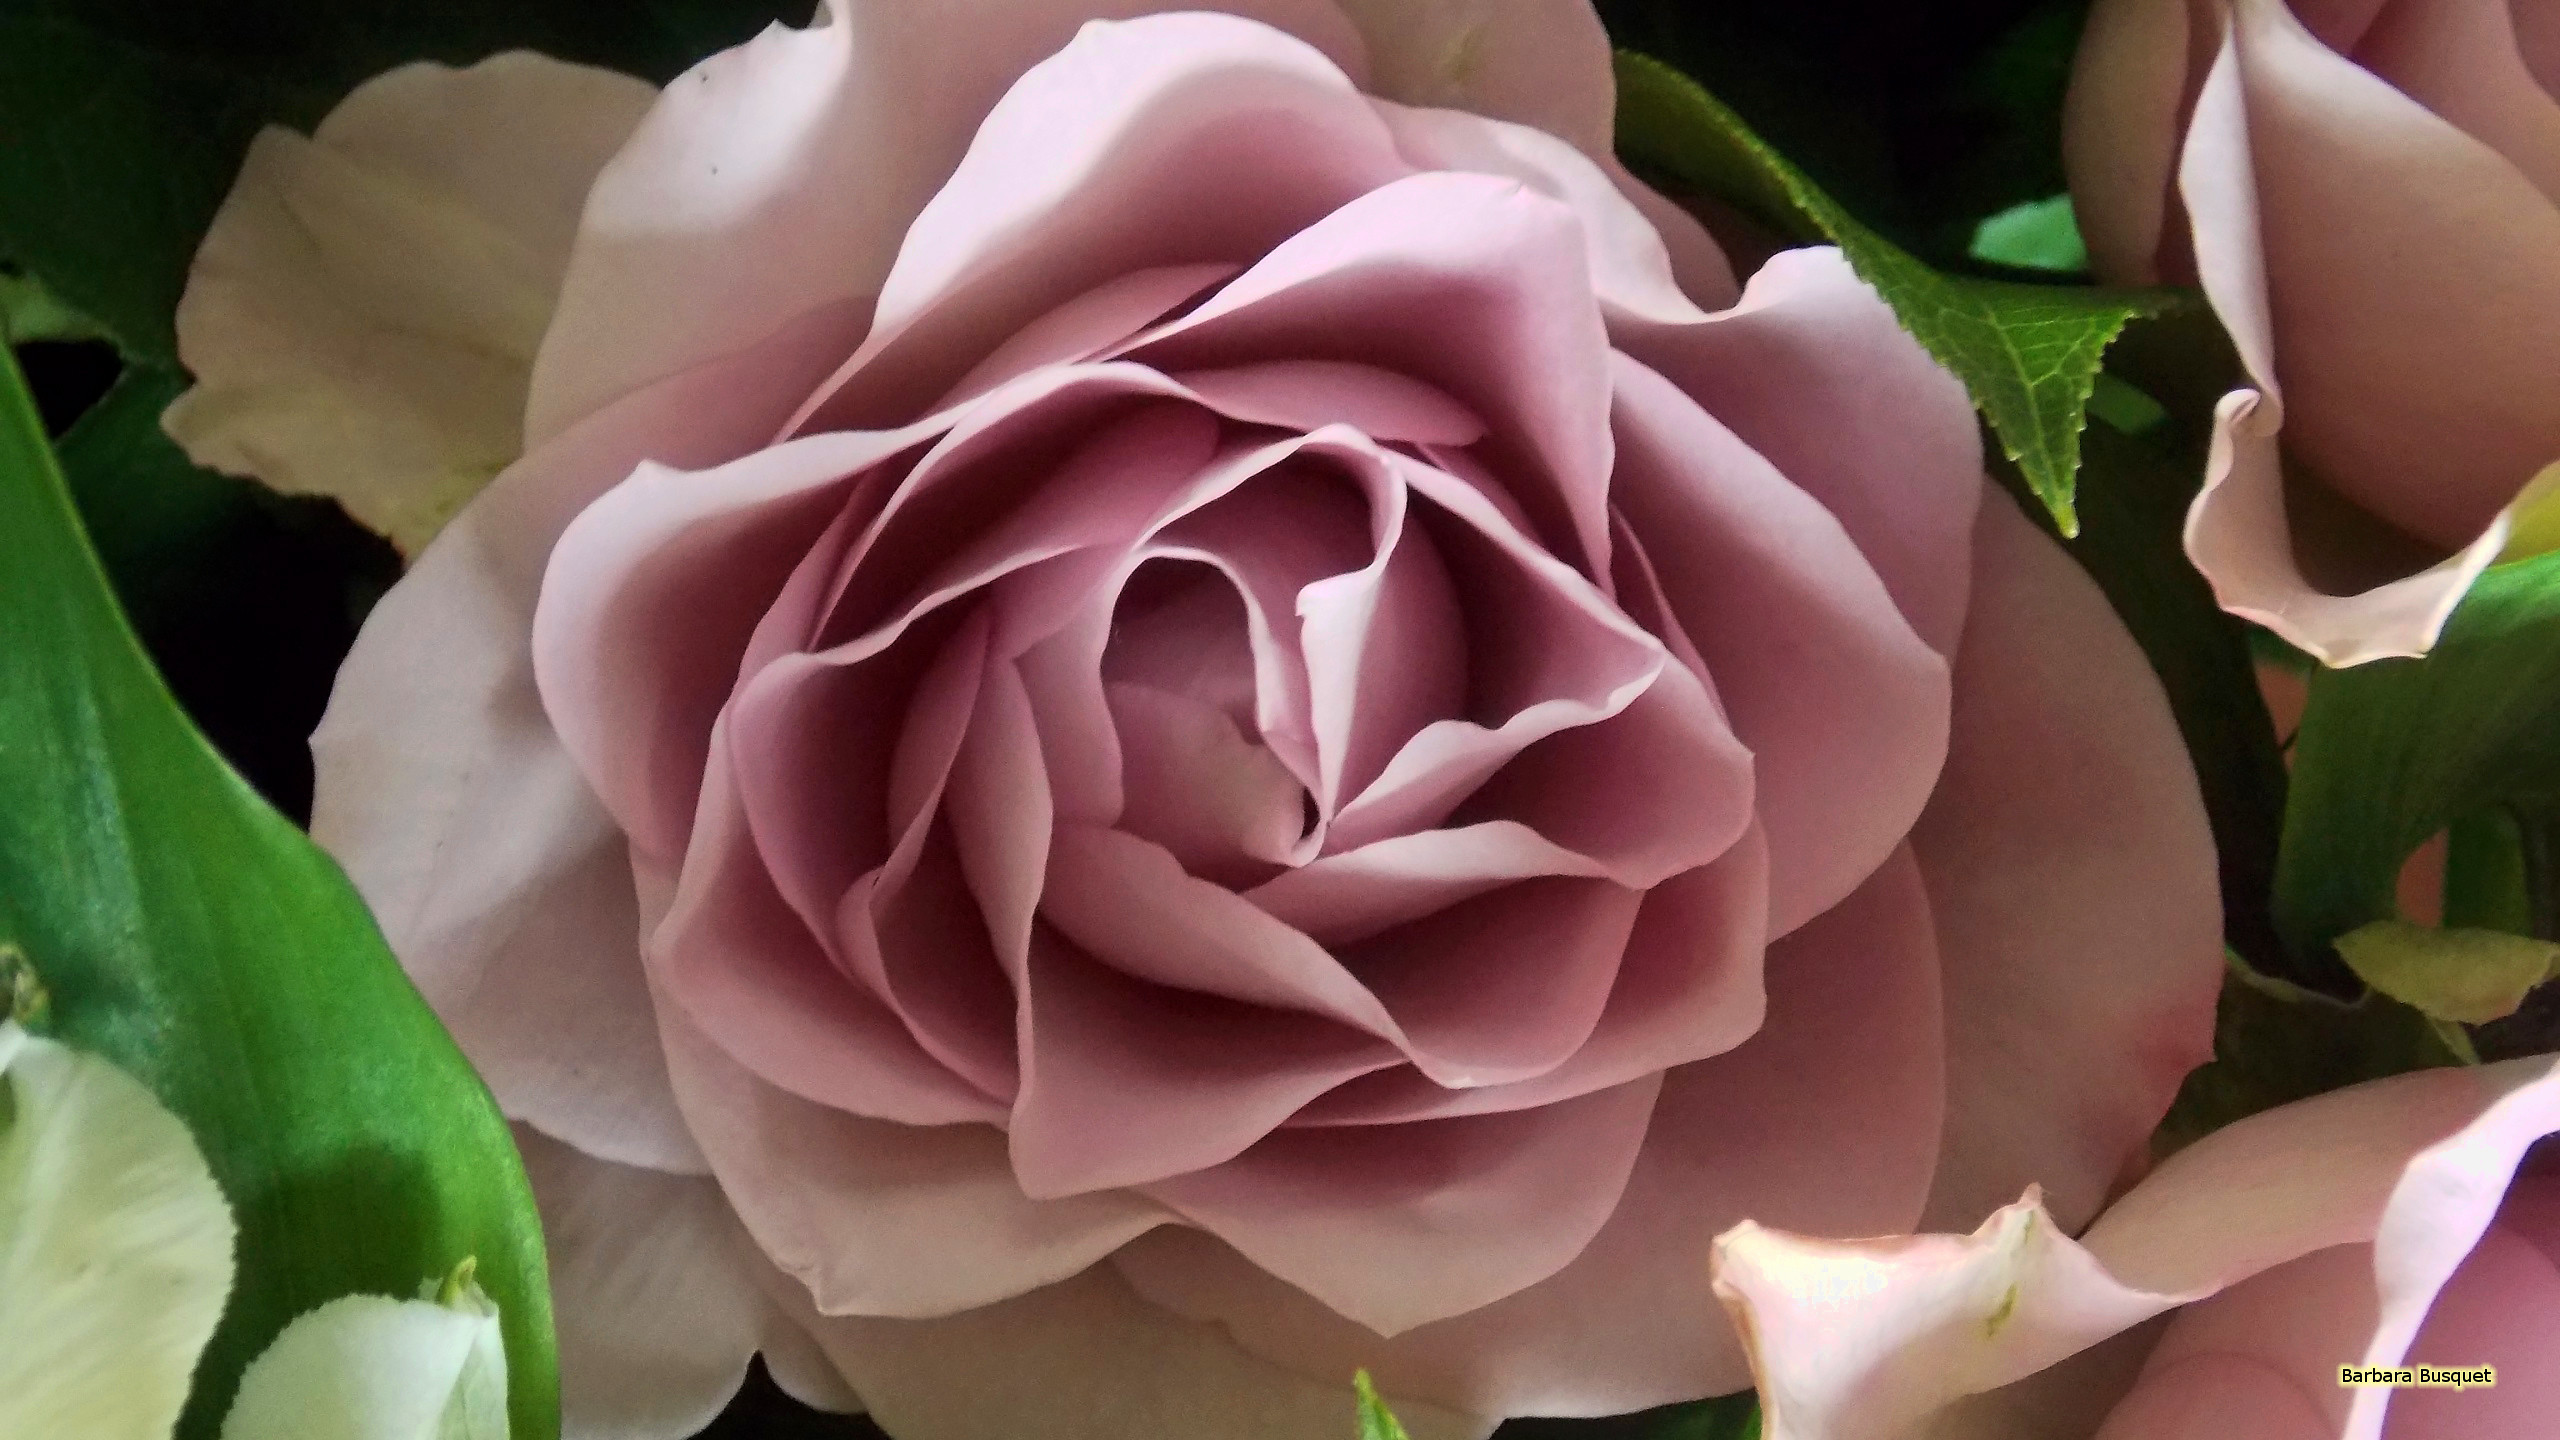 2560x1440 Pink rose close-up photo